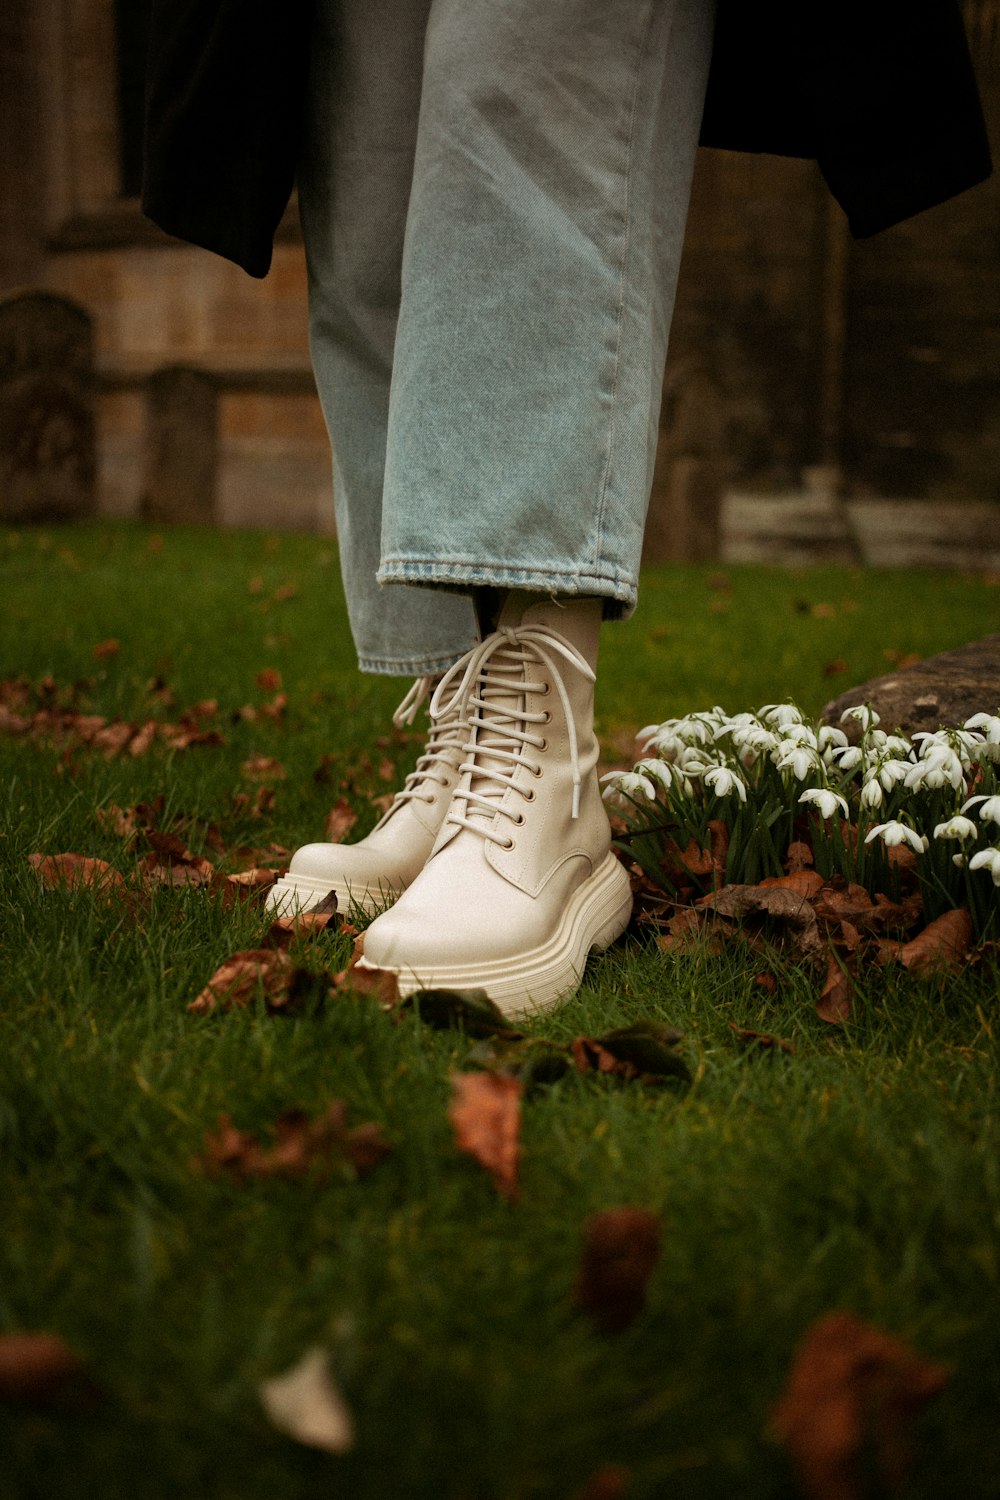 잔디에 흰 신발을 신은 사람의 발